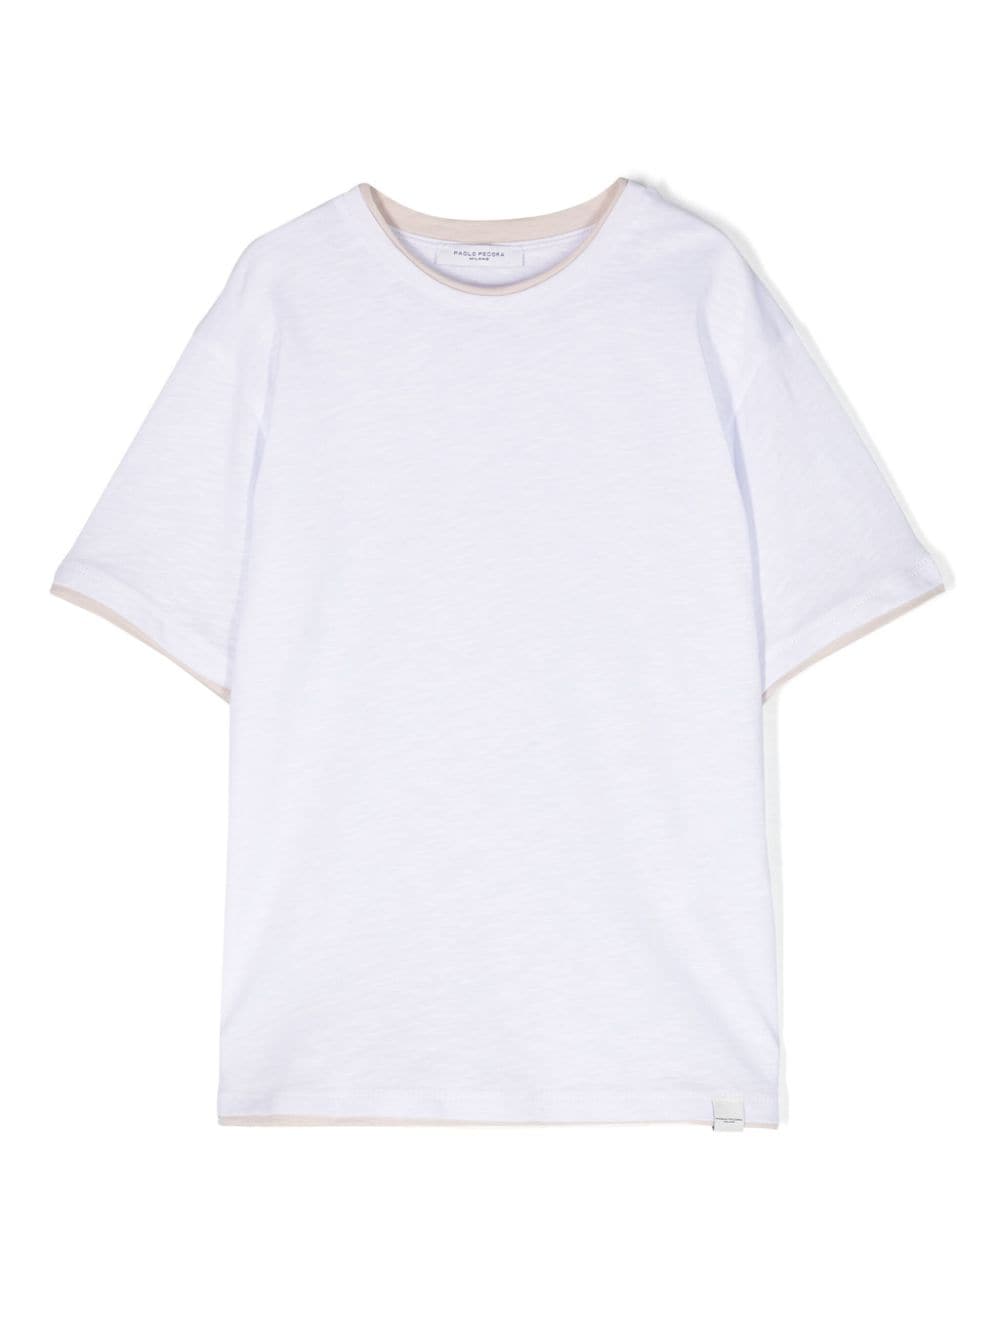 T-shirt bianca bambino